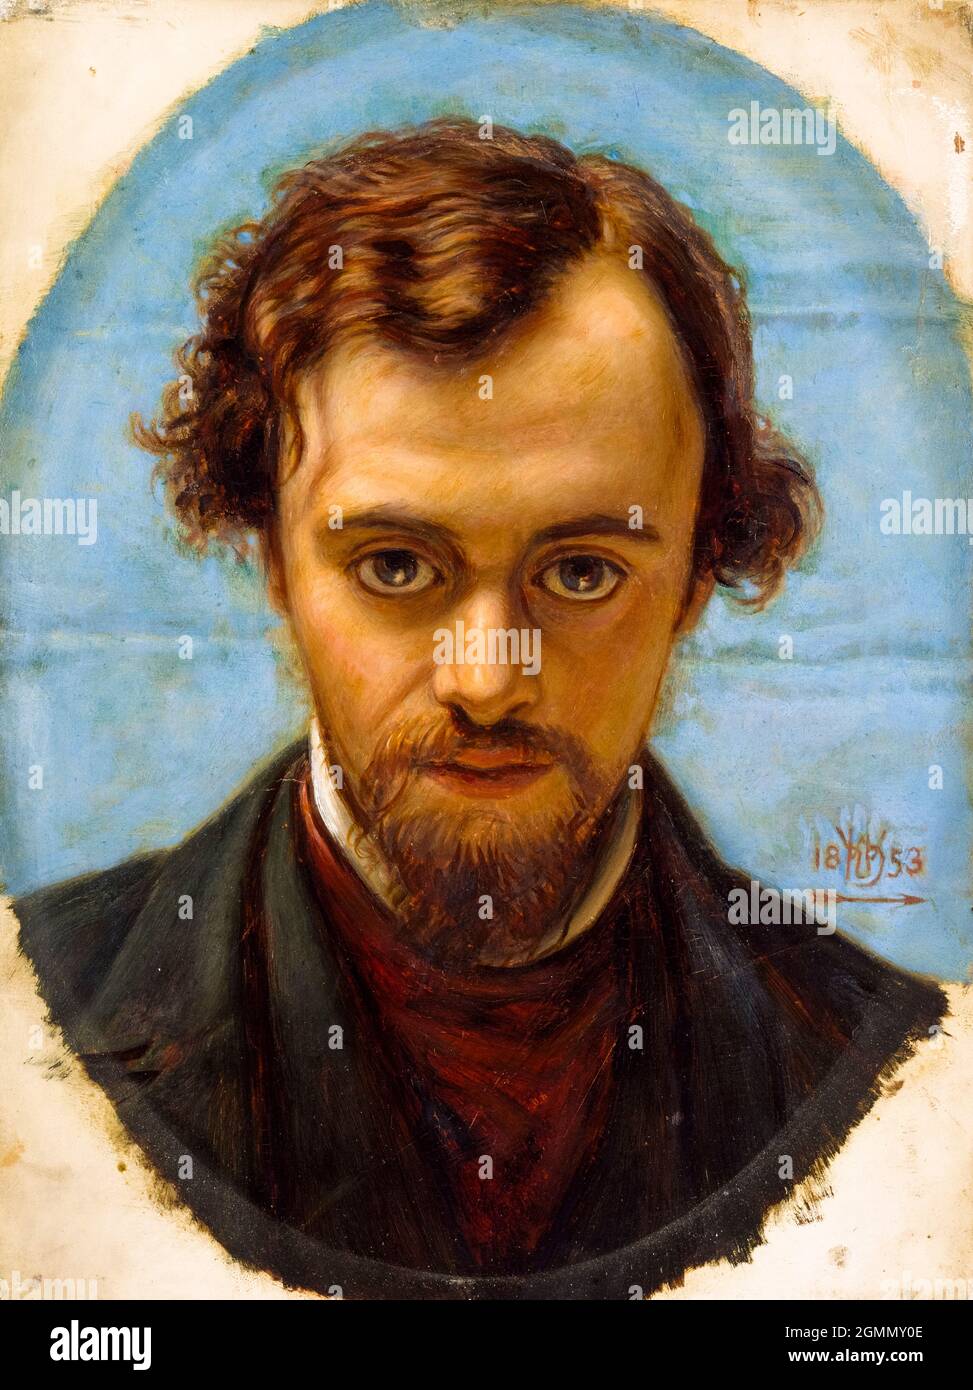 Dante Gabriel Rossetti (1828-1882), englischer Dichter, Illustrator, Maler und Mitbegründer der Präraffaeliten-Bruderschaft, Porträtmalerei von William Holman Hunt, 1853 Stockfoto